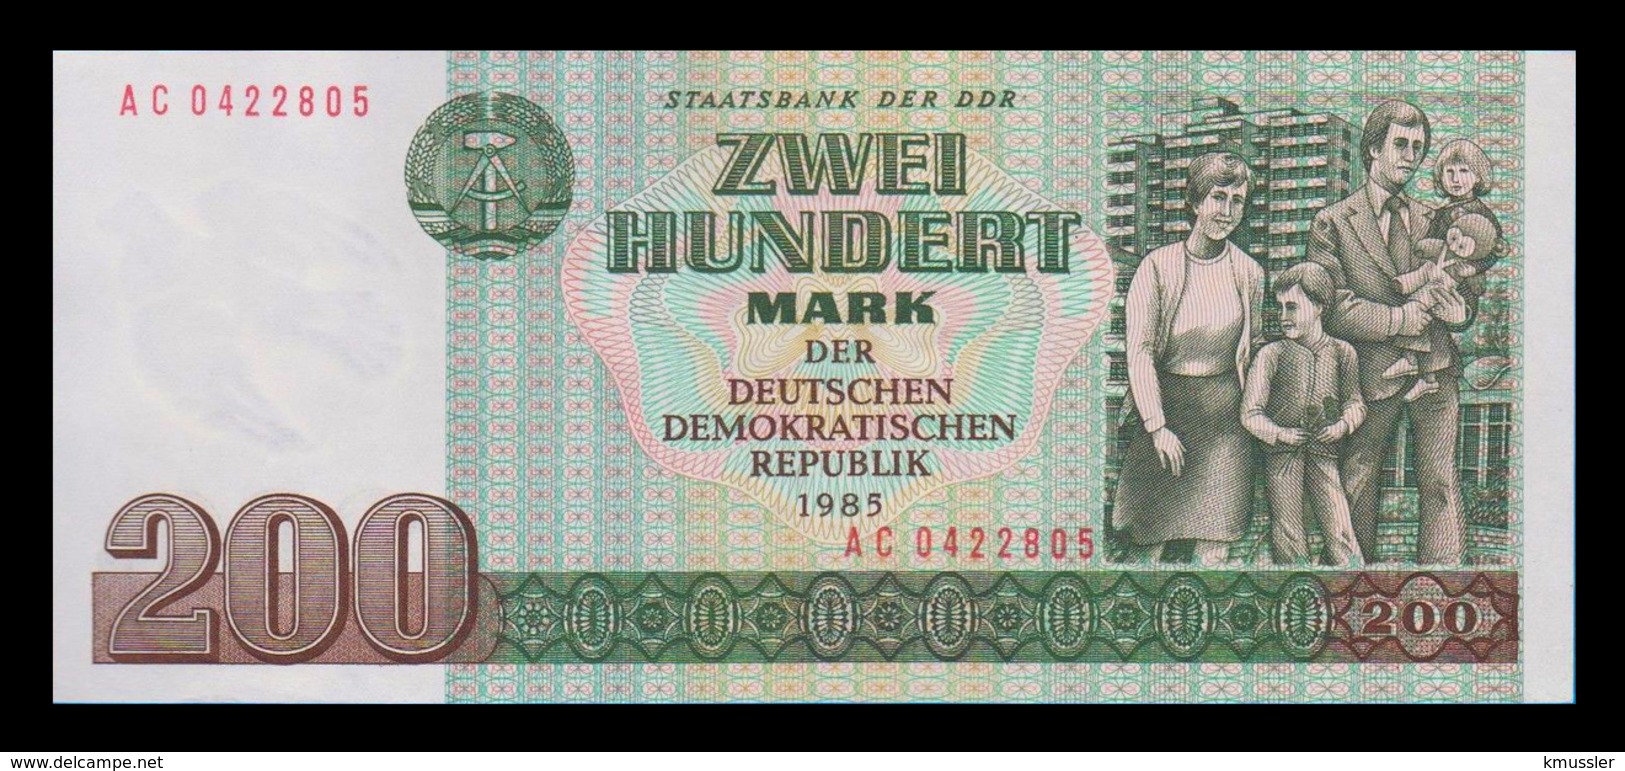 # # # Banknote DDR (Eastgermany GDR) 200 Mark 1985 UNC # # # - 200 Mark